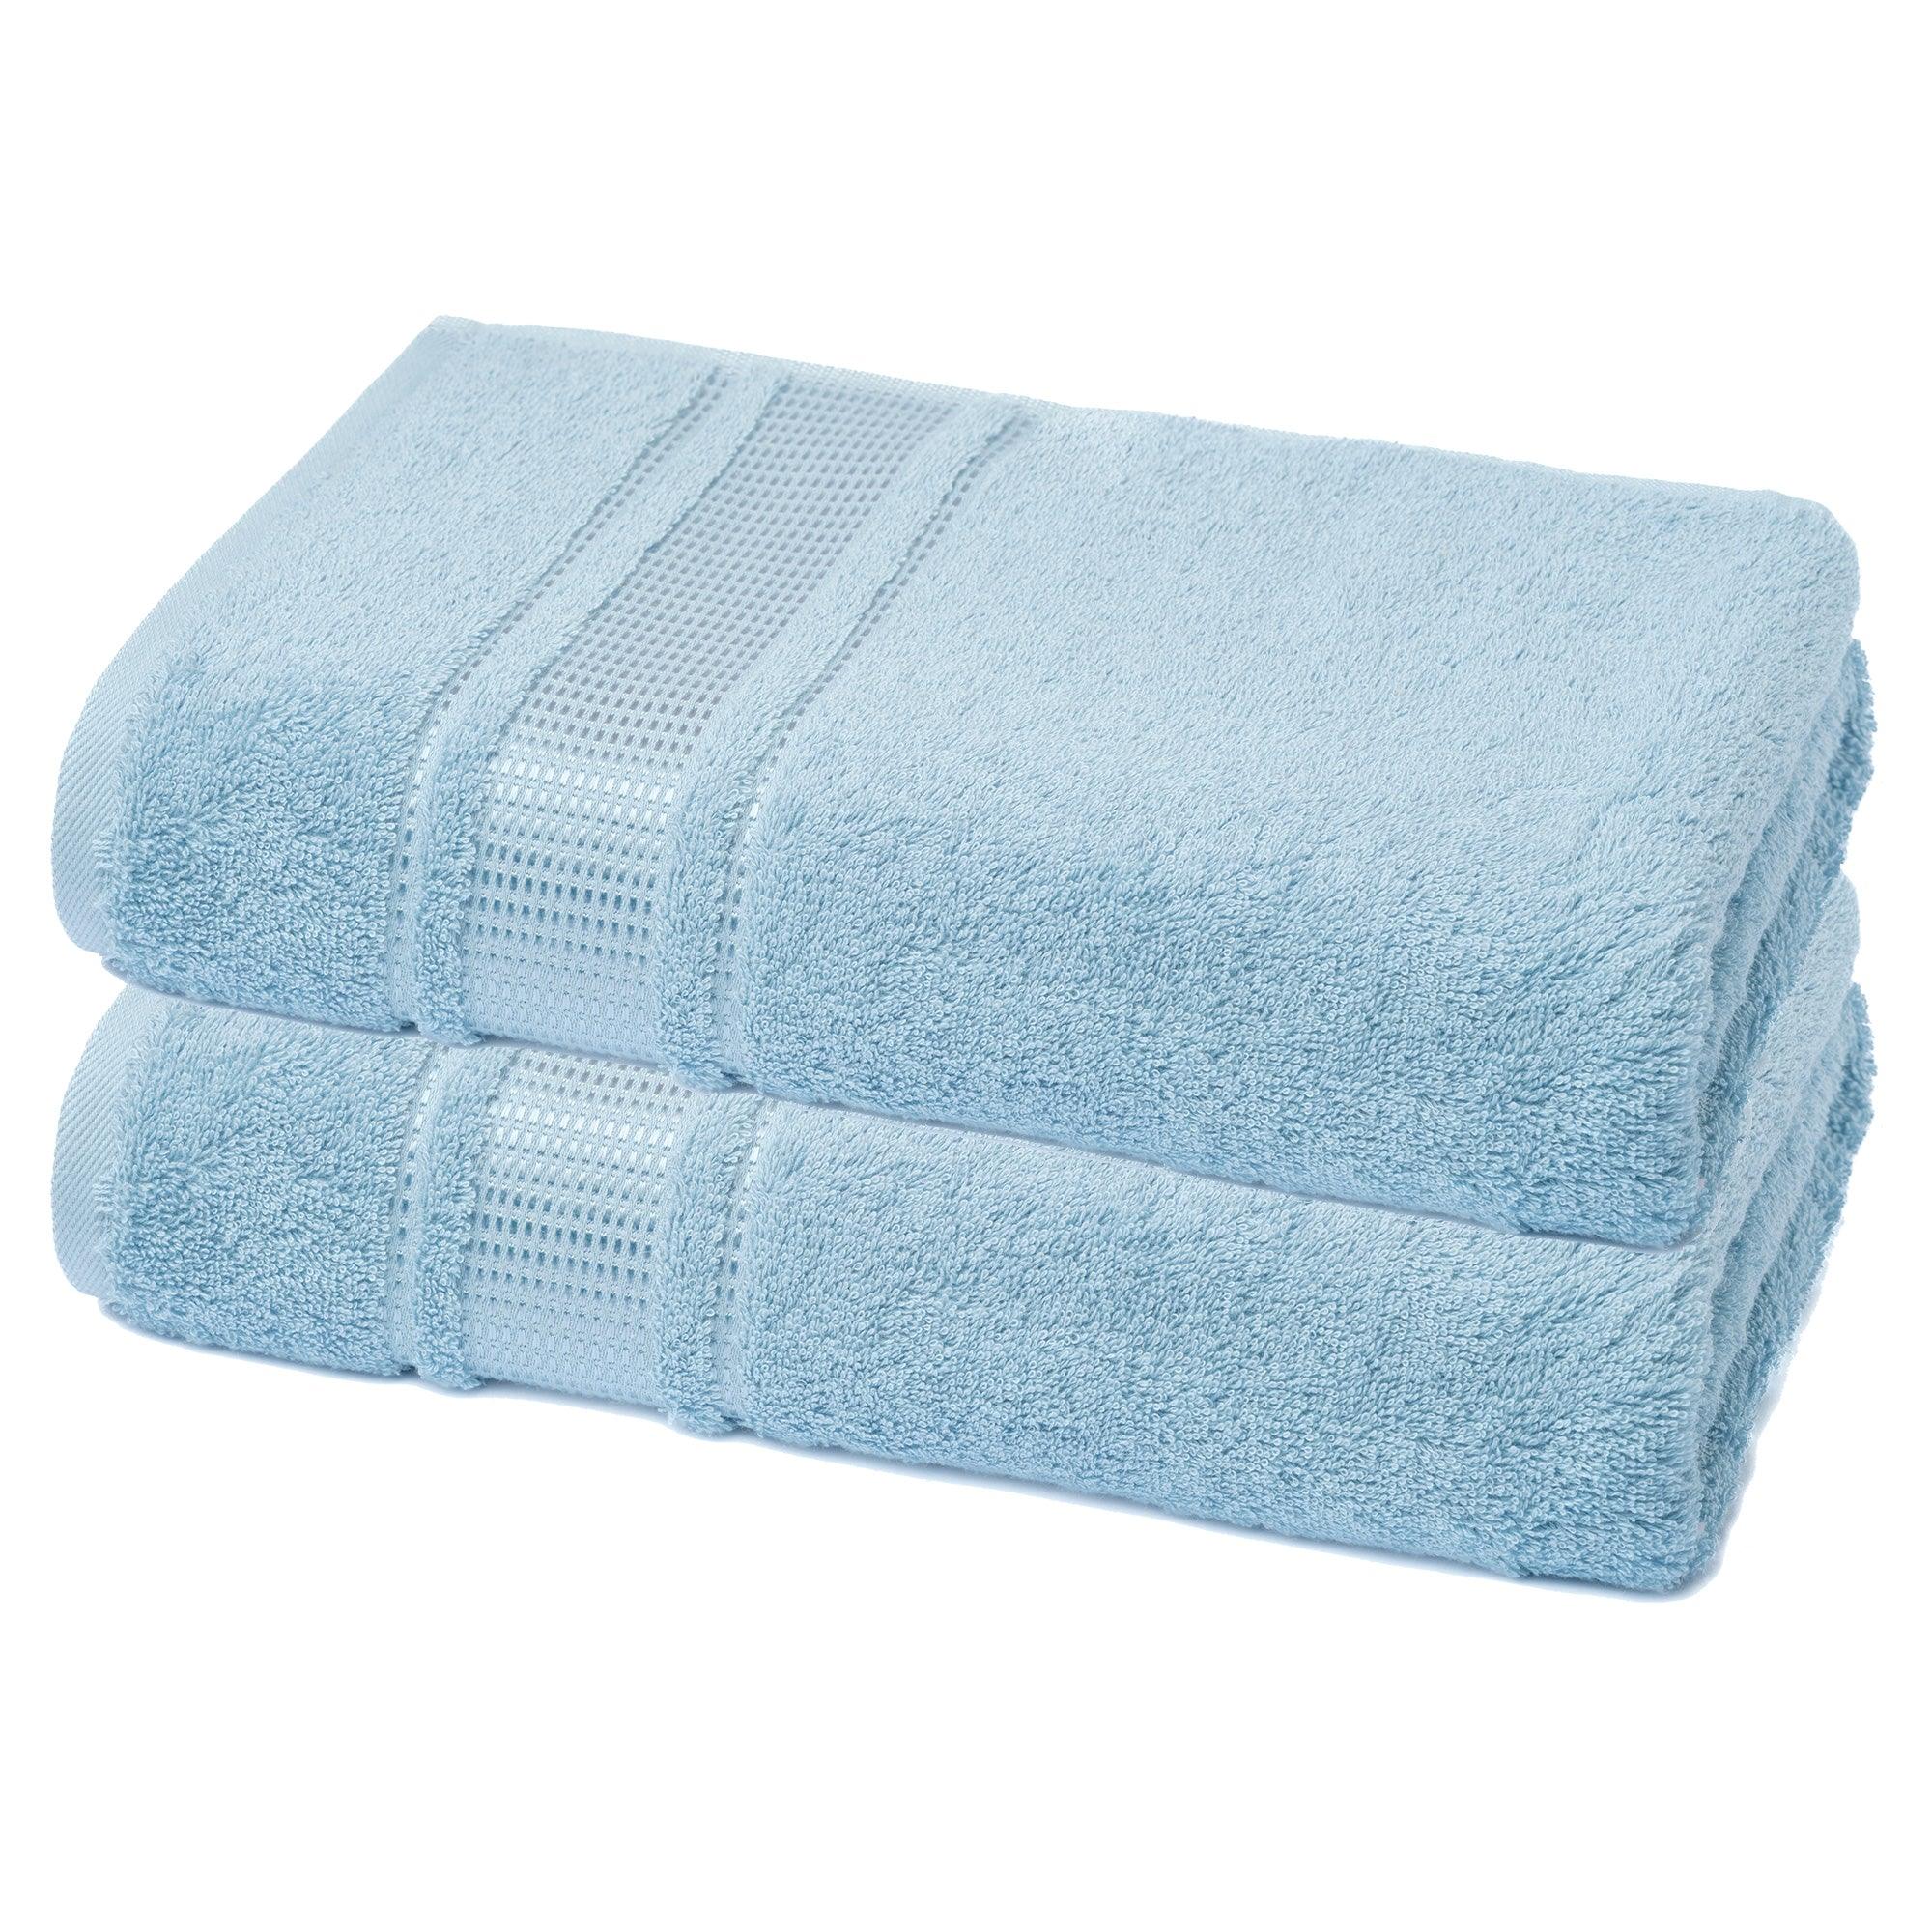 Clorox Bath Towel Set 2 Pack Bath Towels, 30x52 inch, Mineral Blue, Size: 30 x 52